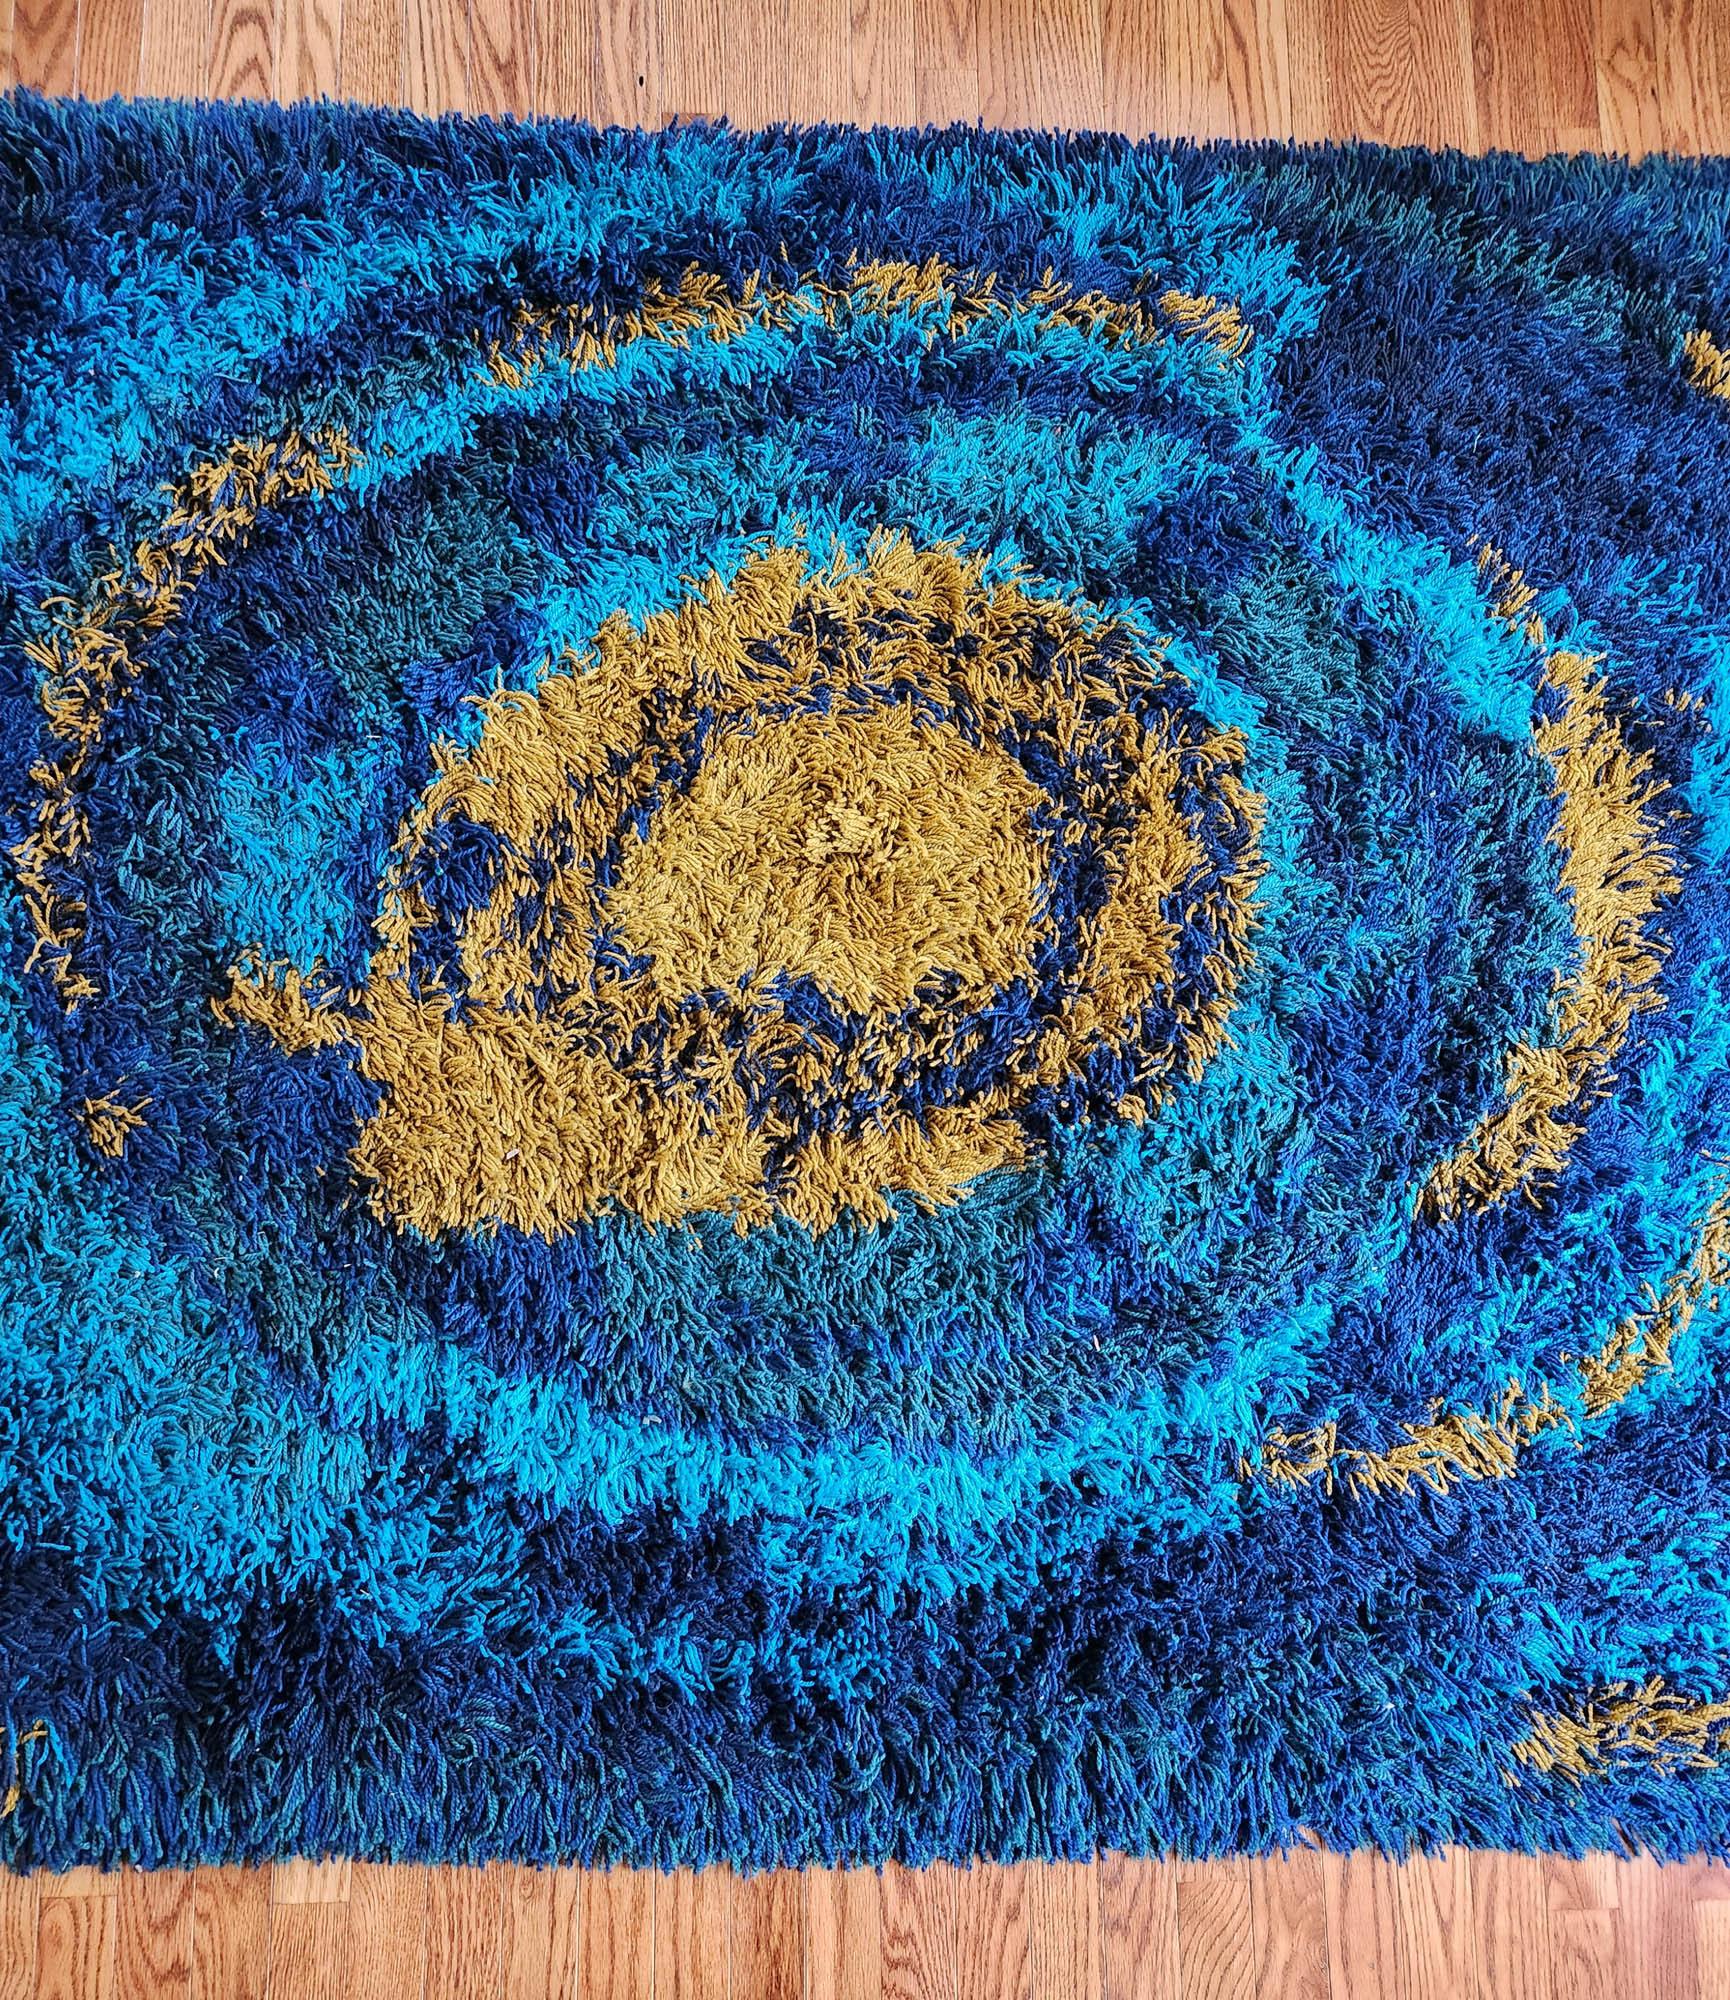 Ege Tæpper Sun Burst Vorleger,
Ege Rya,
Ende der 1960er- Anfang der 1970er-Jahre

Der Wollteppich Ege Tæpper ist ein wunderbares Beispiel für dieses ikonische skandinavische Modern Rug Design.  Der Teppich hat einen kräftigen blauen Grund mit einer